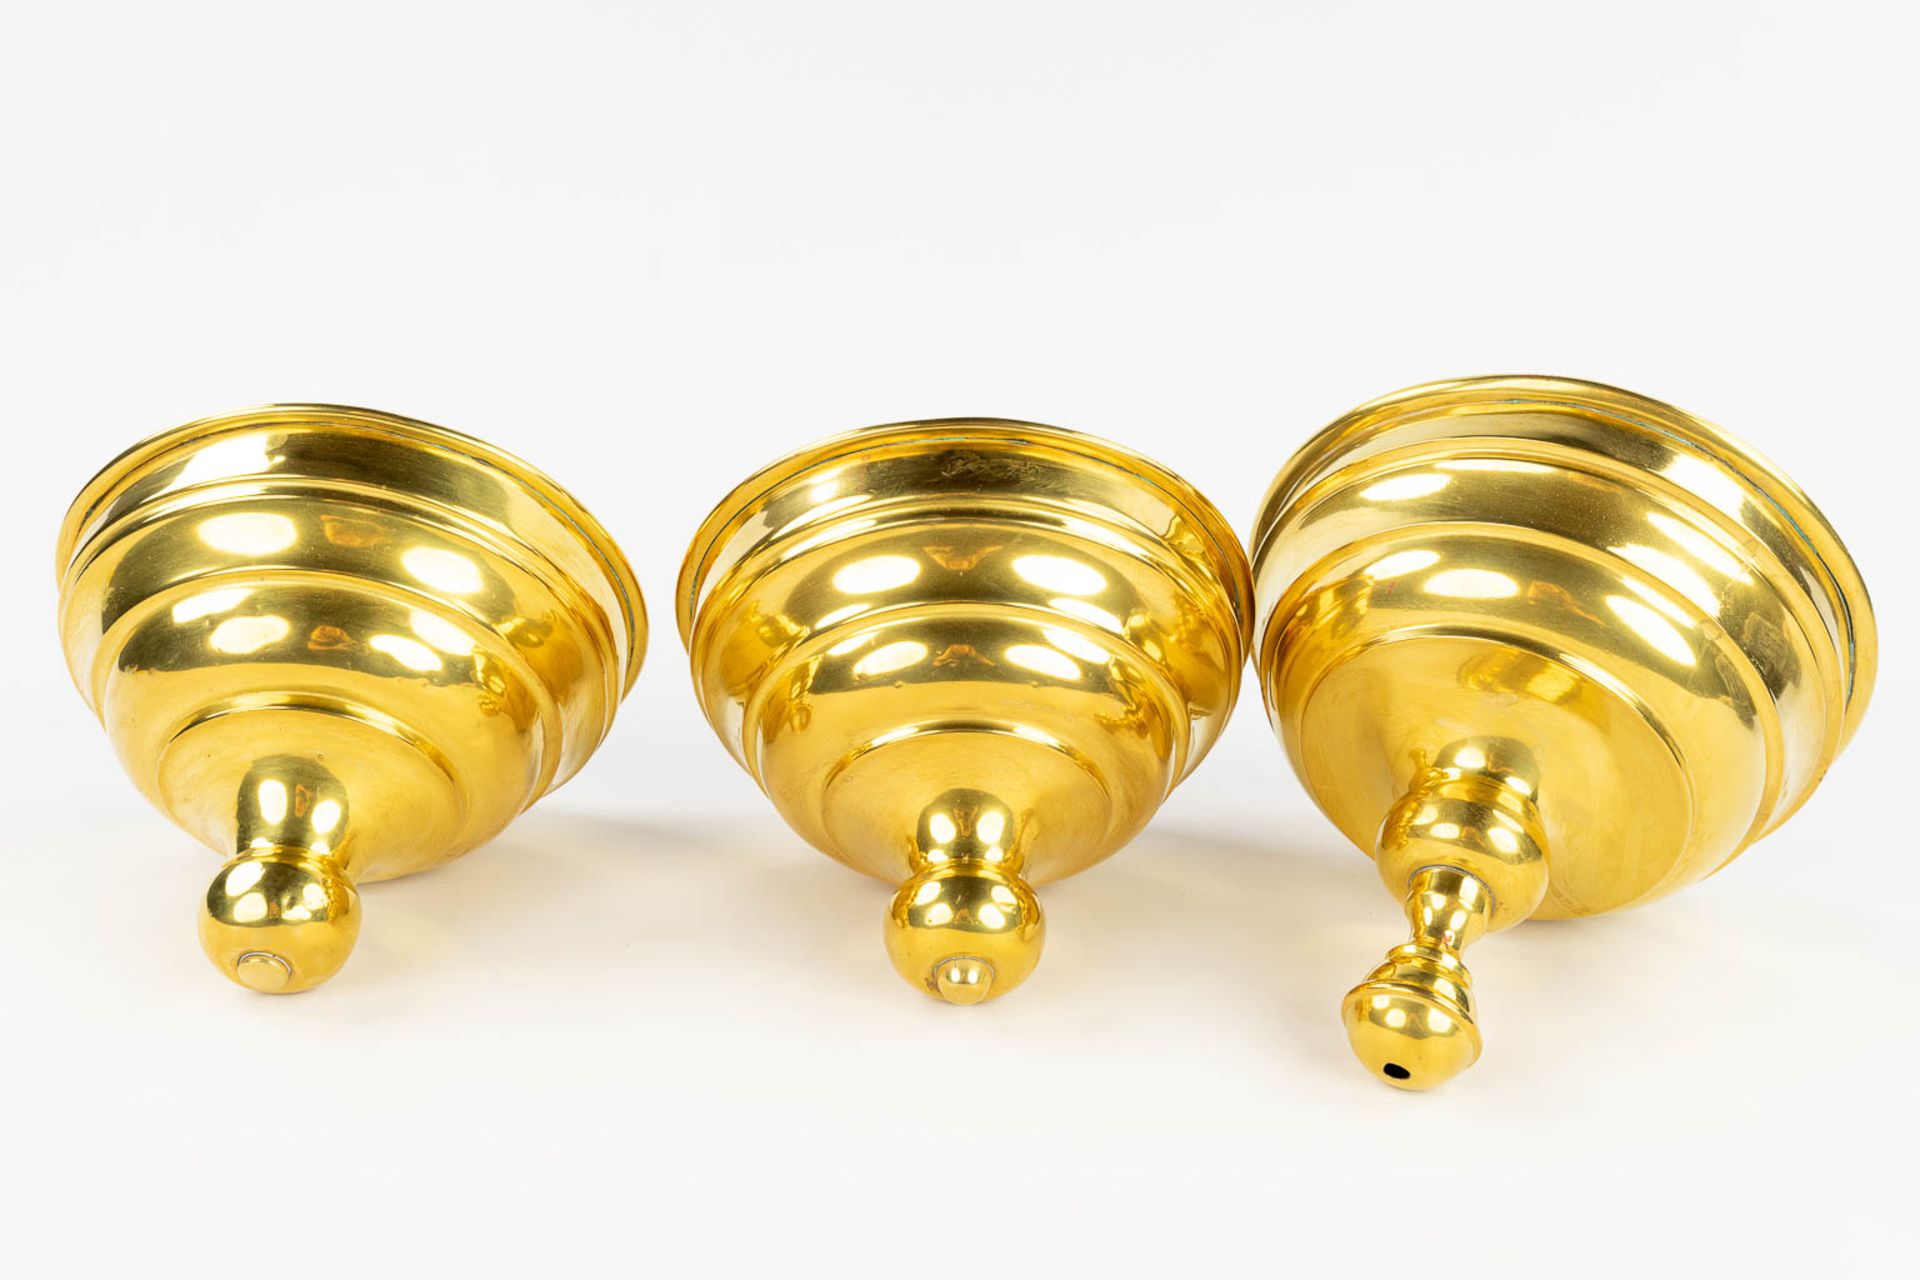 A set of 3 grs tabacco jars with brass lid, Germany, 19th C. (H: 38 x D: 23 cm) - Image 17 of 17